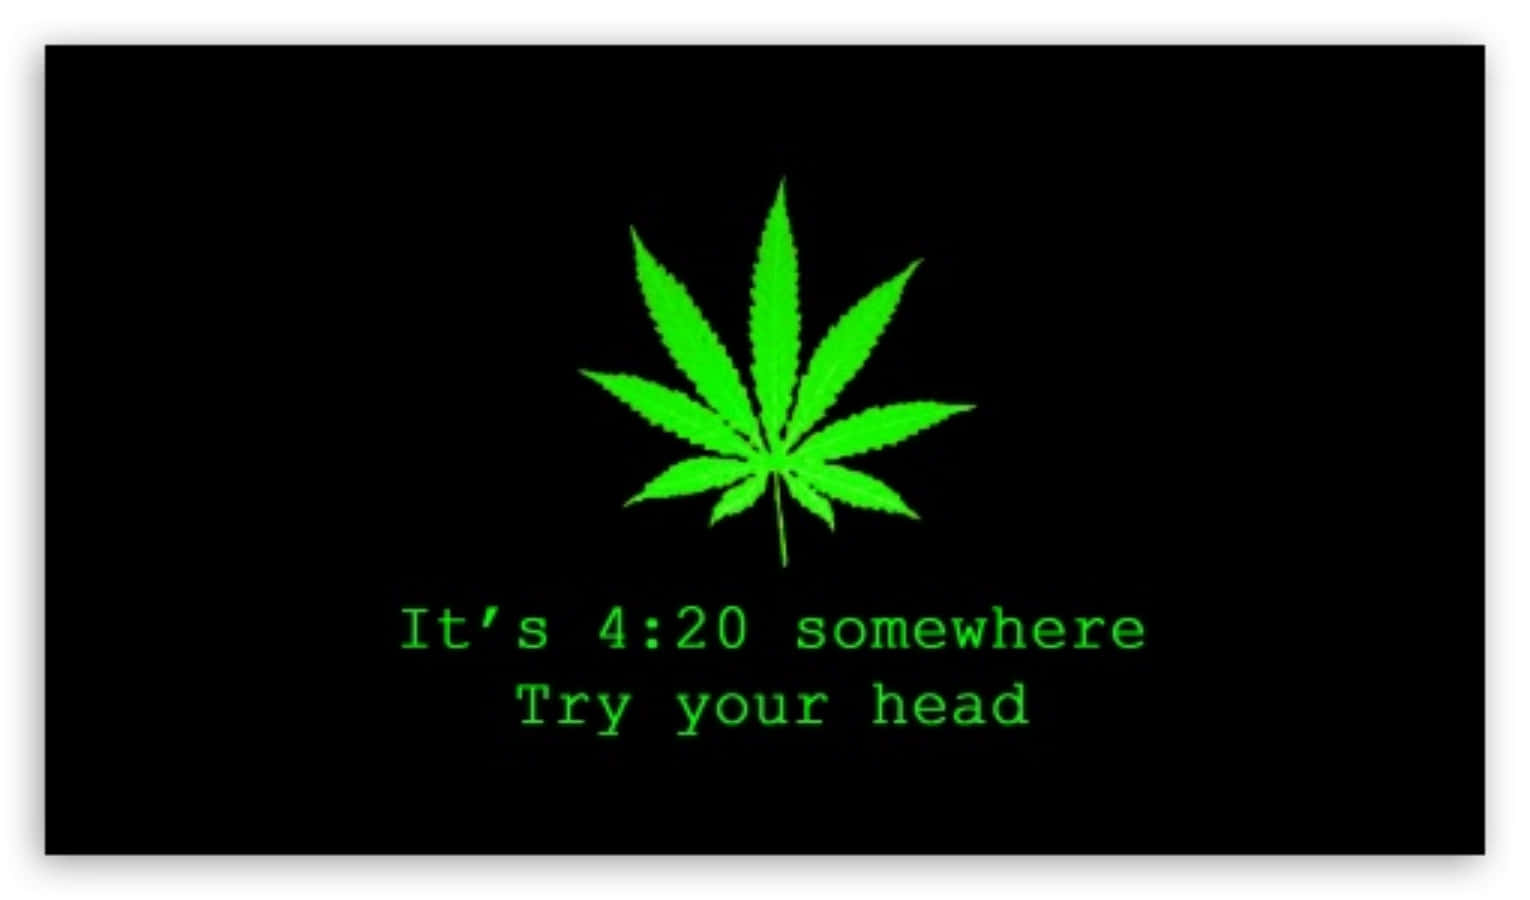 Esist Irgendwo 420, Probiere Deinen Kopf-poster Aus.